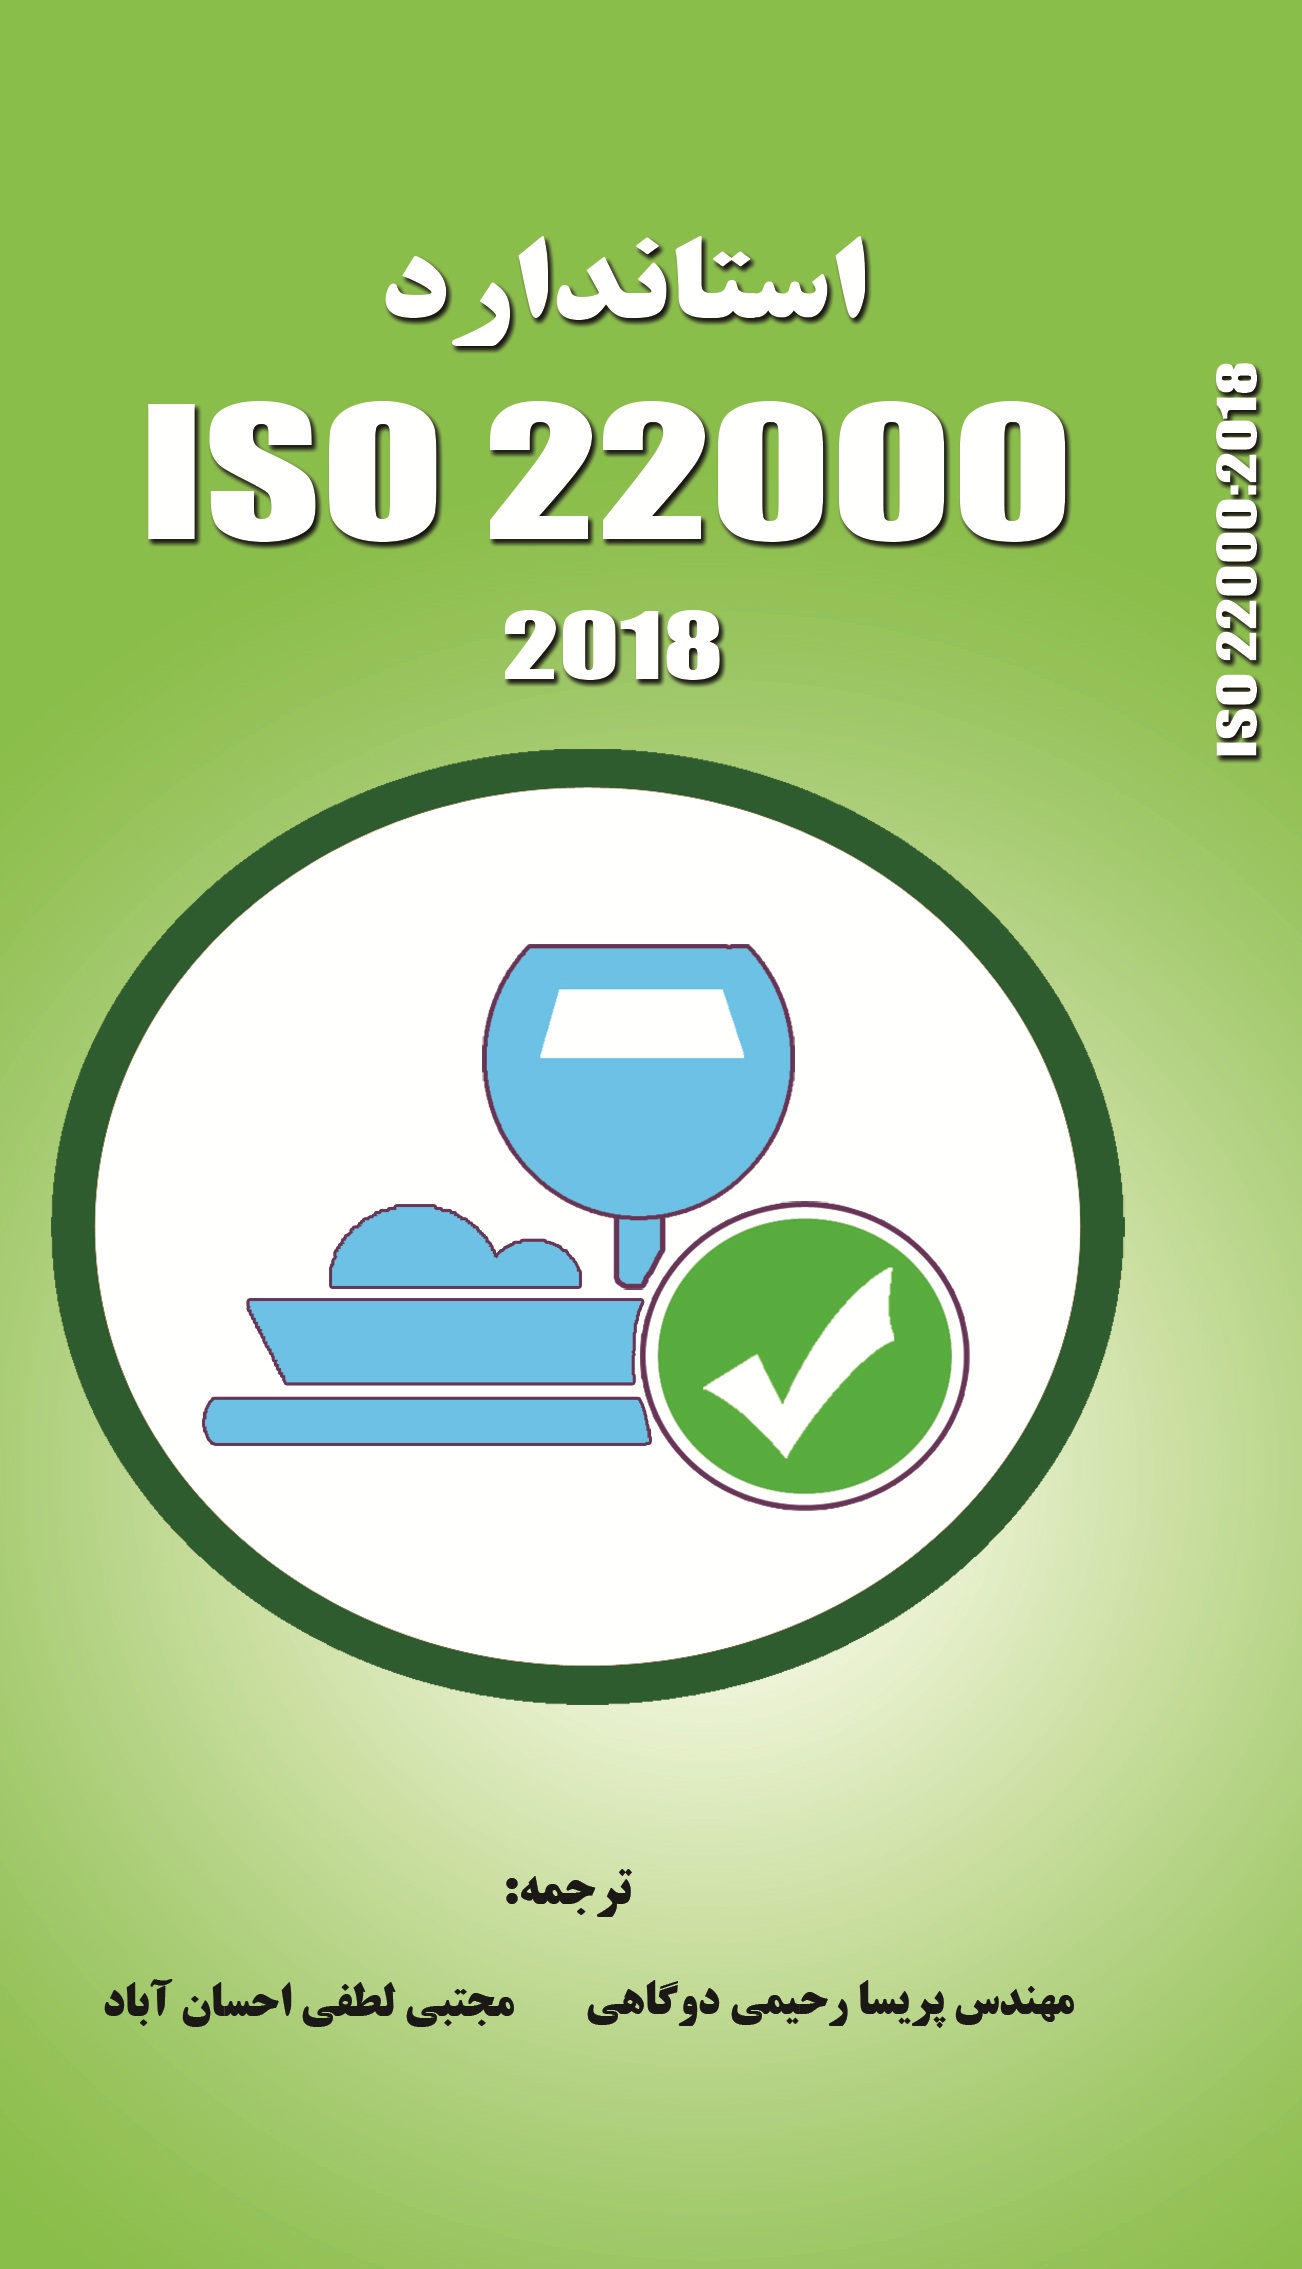 الزامات سيستم مديريت ايمني مواد غذايي ISO 22000:2018